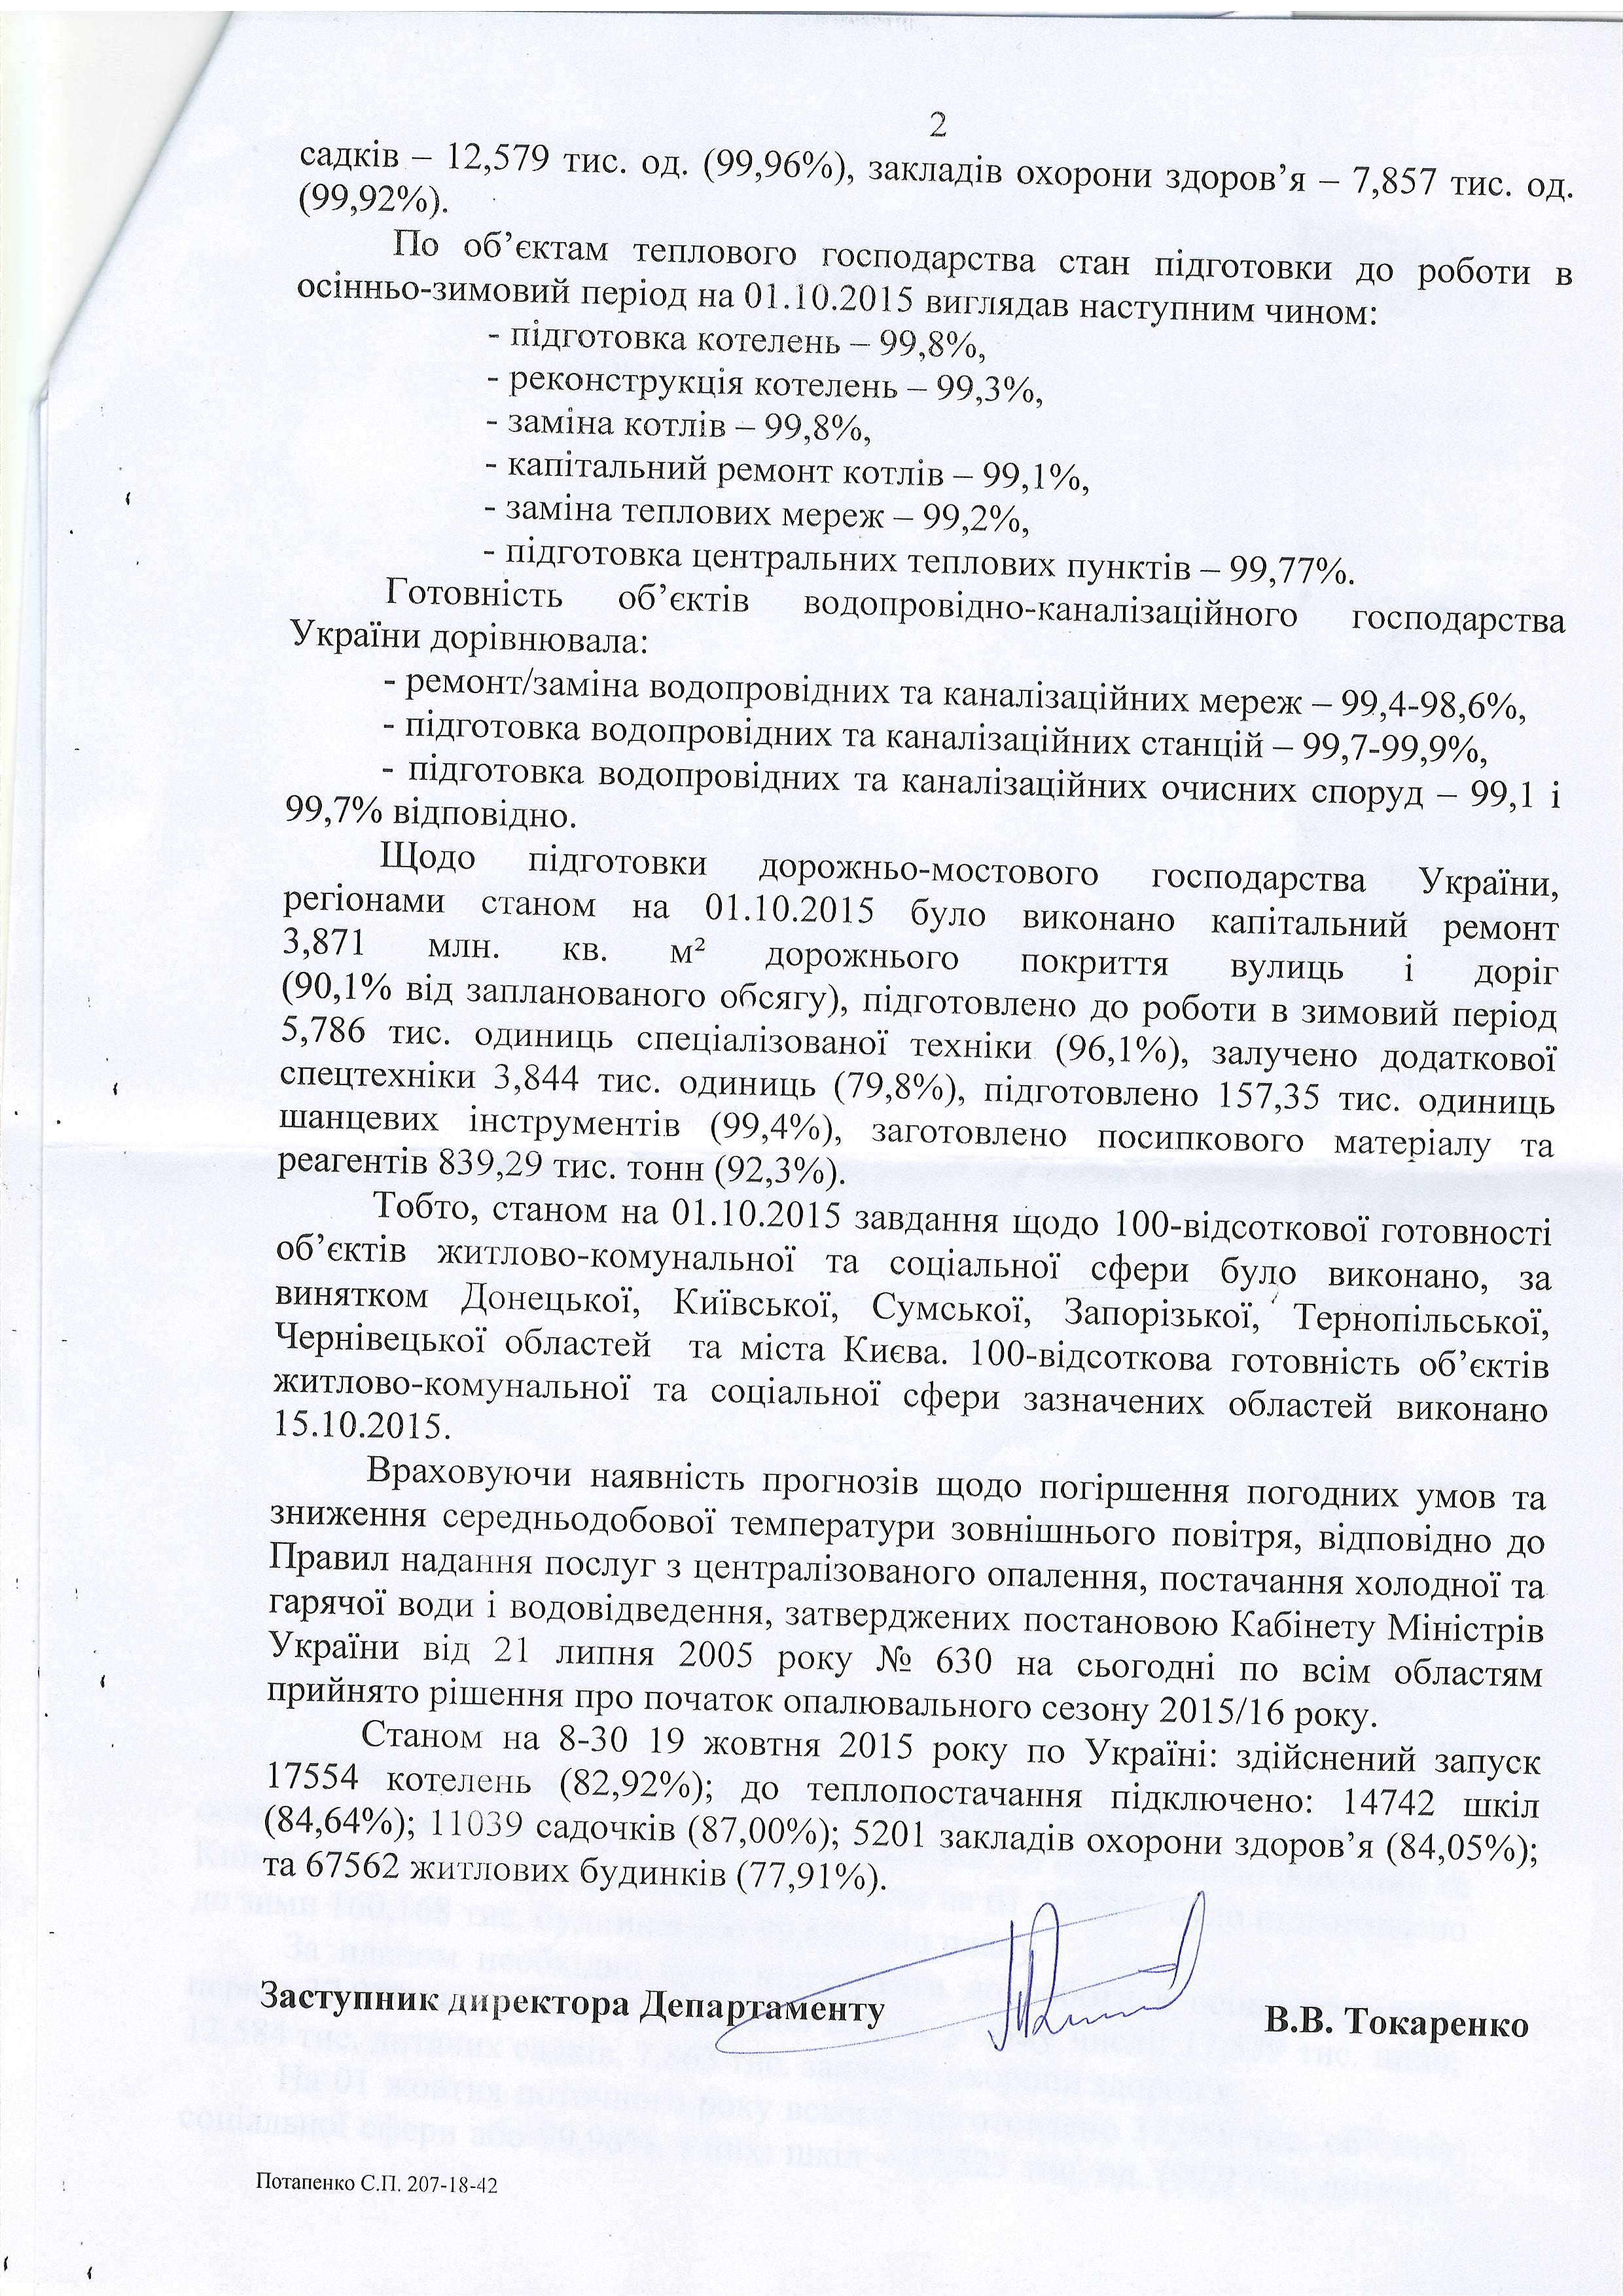 Лист міністерства регіонального розвитку, будівництва та житлово - комунального господарства України від 19 жовтня 2015 року